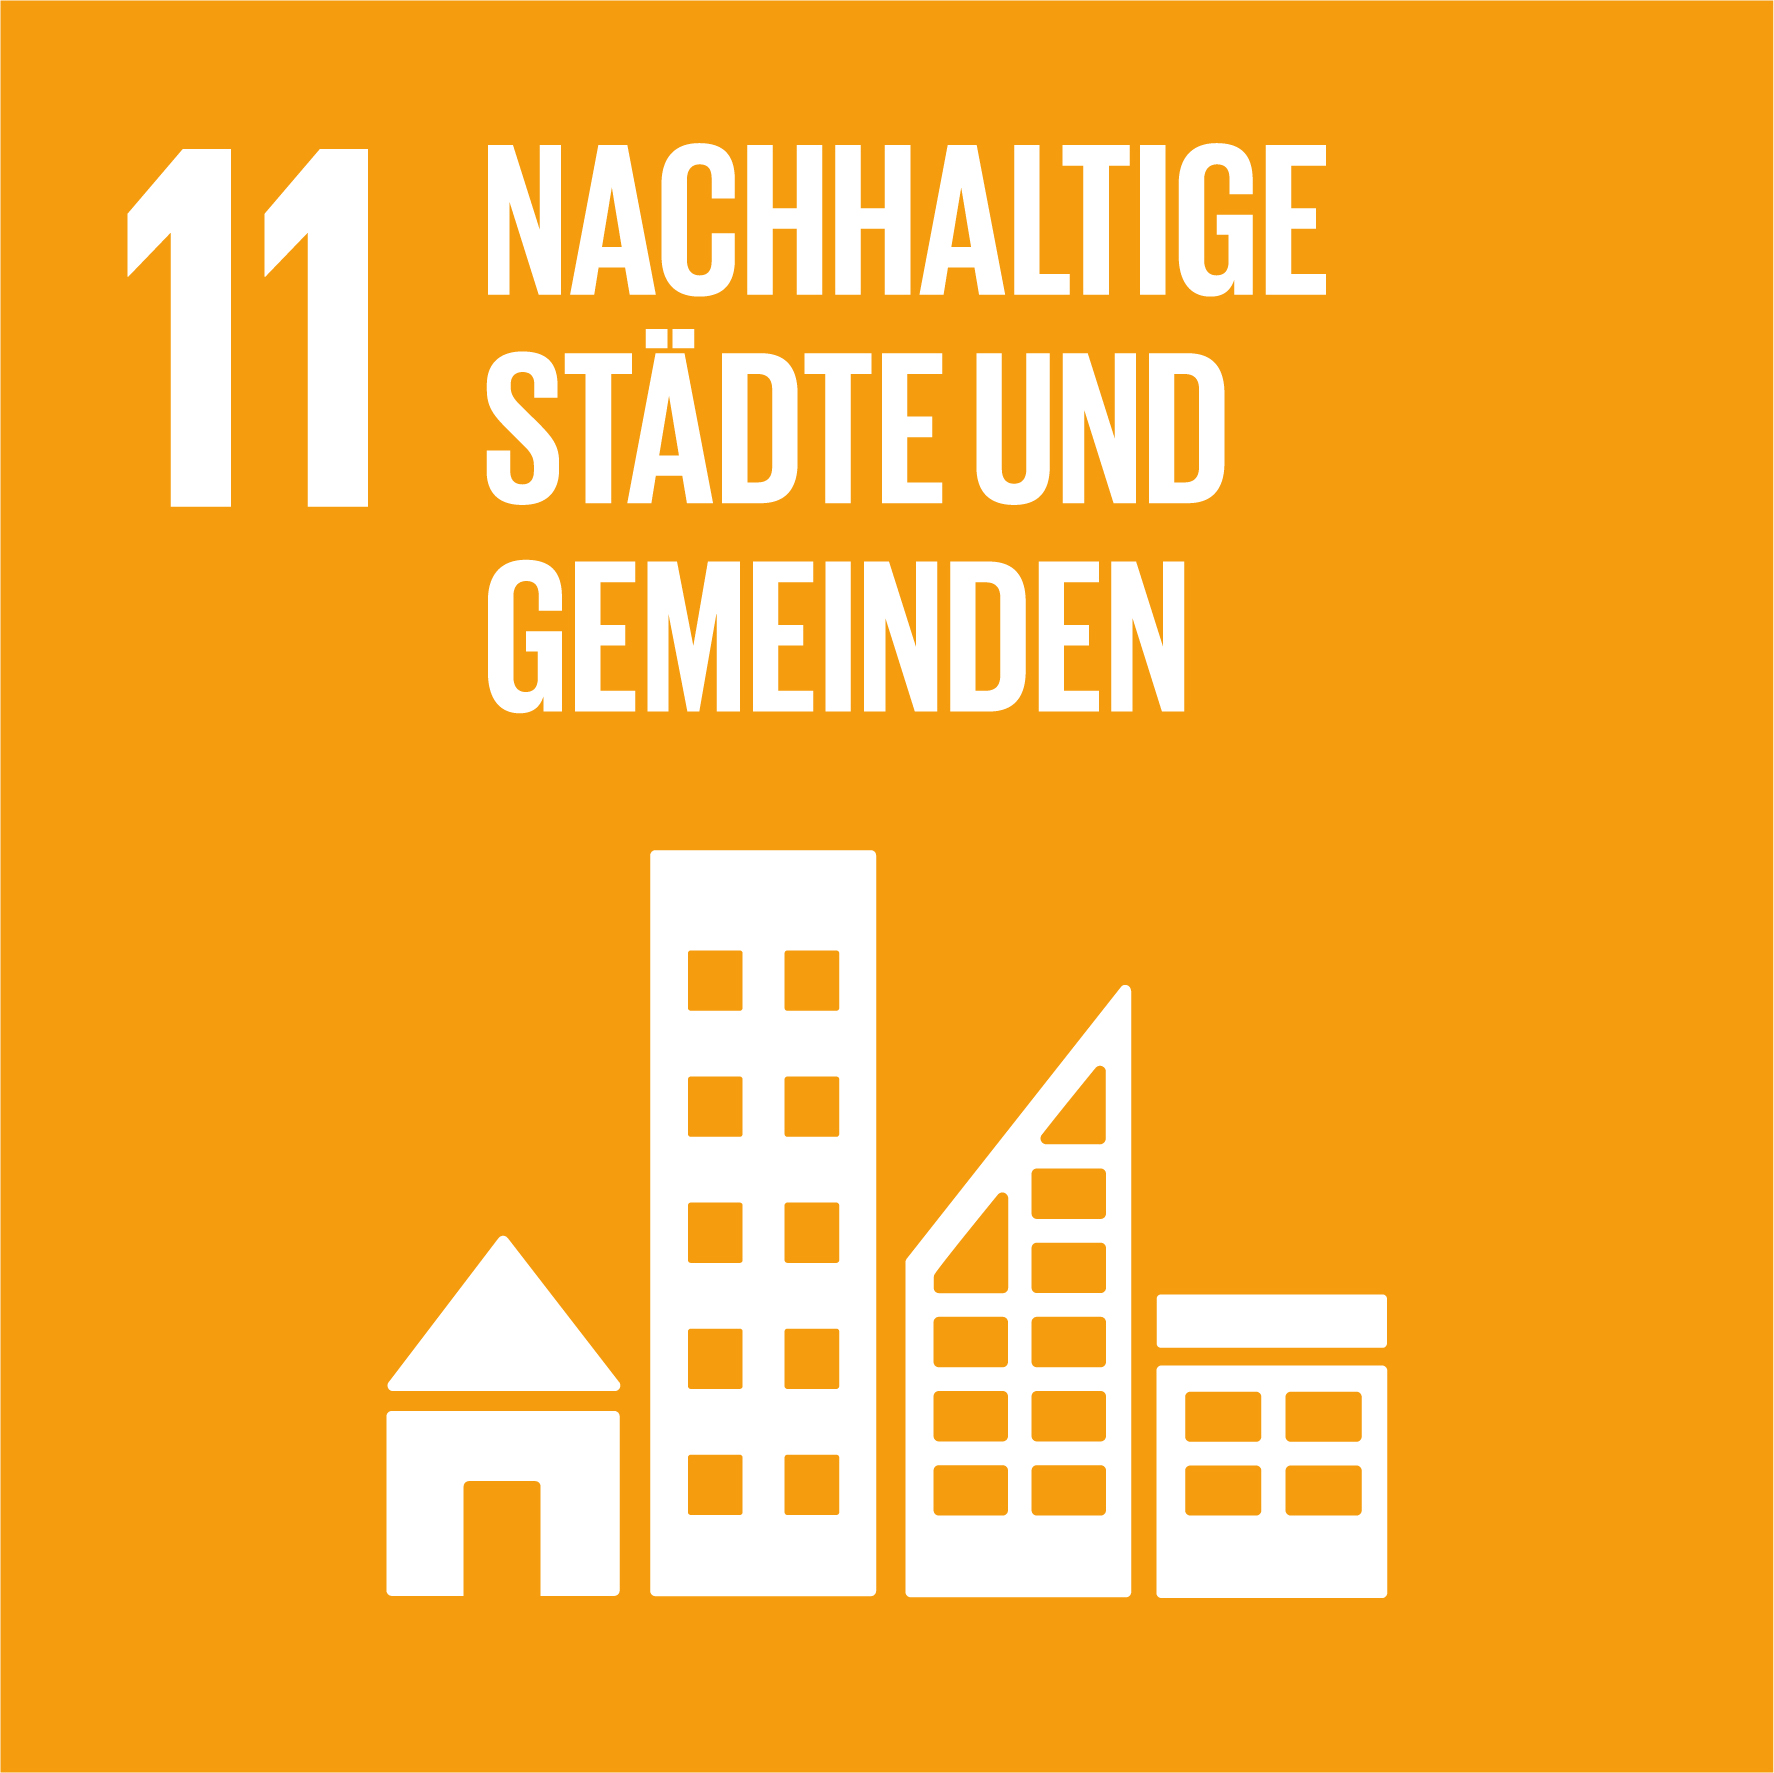 SDG 11: Nachhaltige Städte und Gemeinden